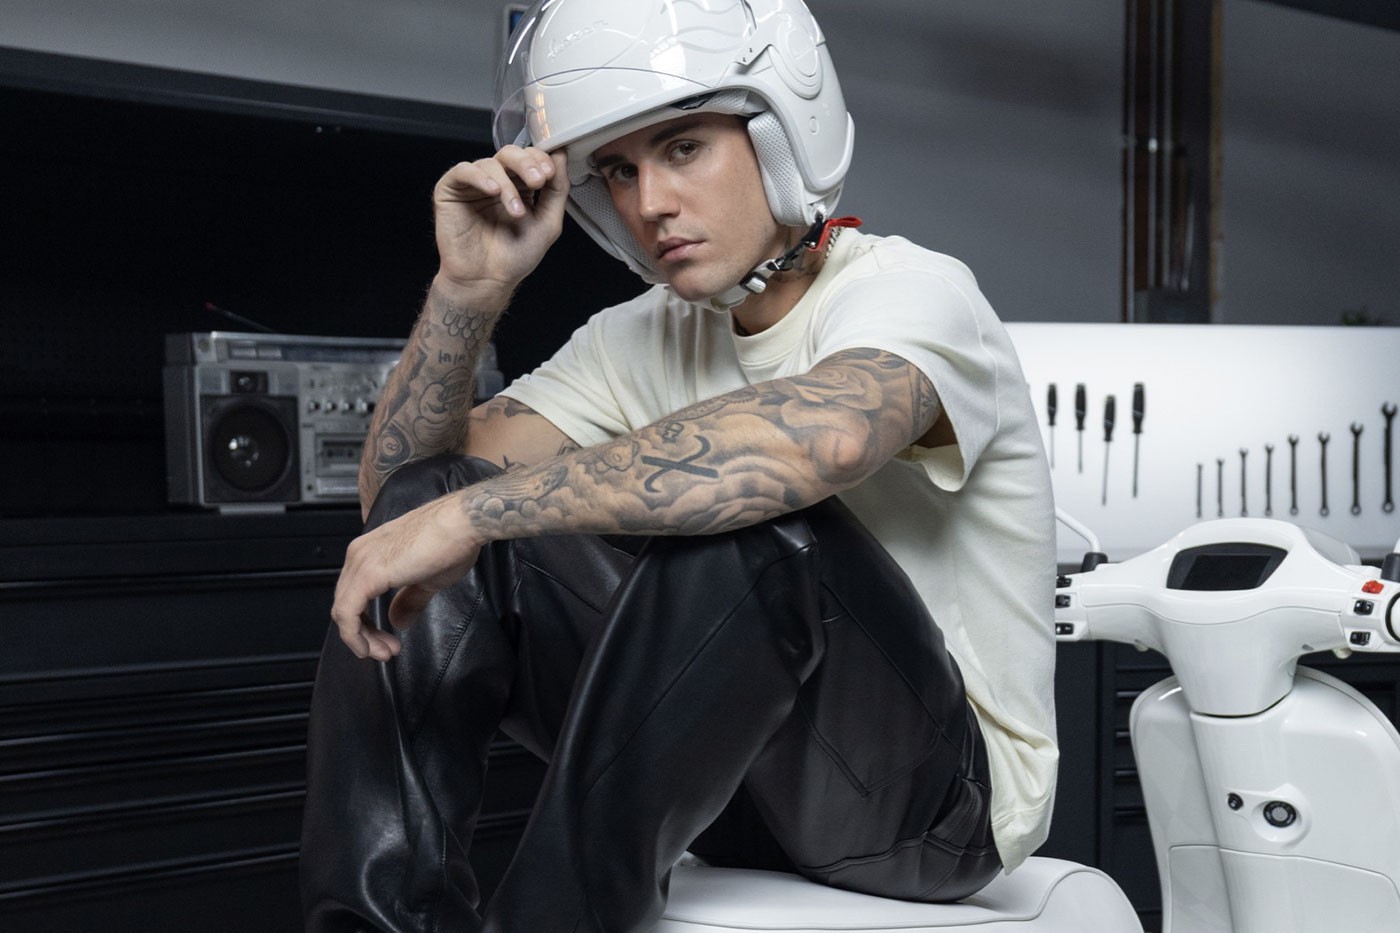 Model Vespy powstały przy współpracy z Justiniem Bieberem